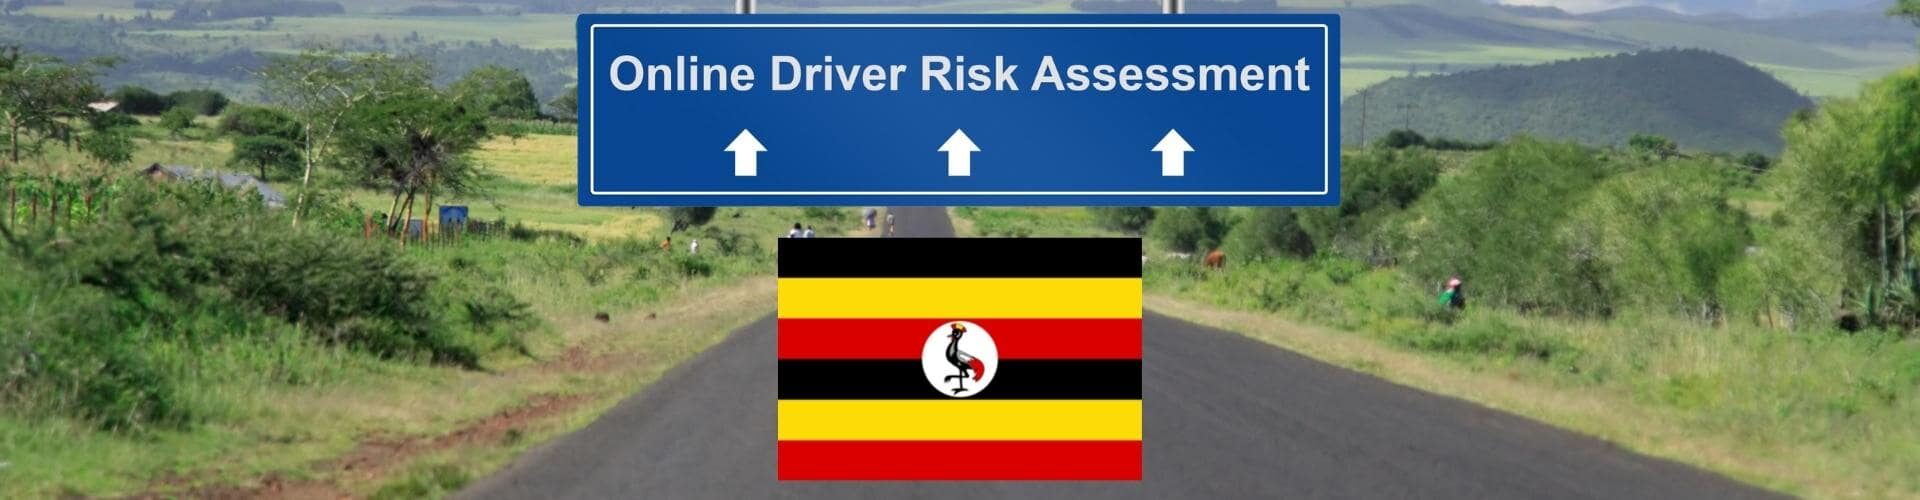 Online Driver Risk assessment Uganda - ADA - Slider